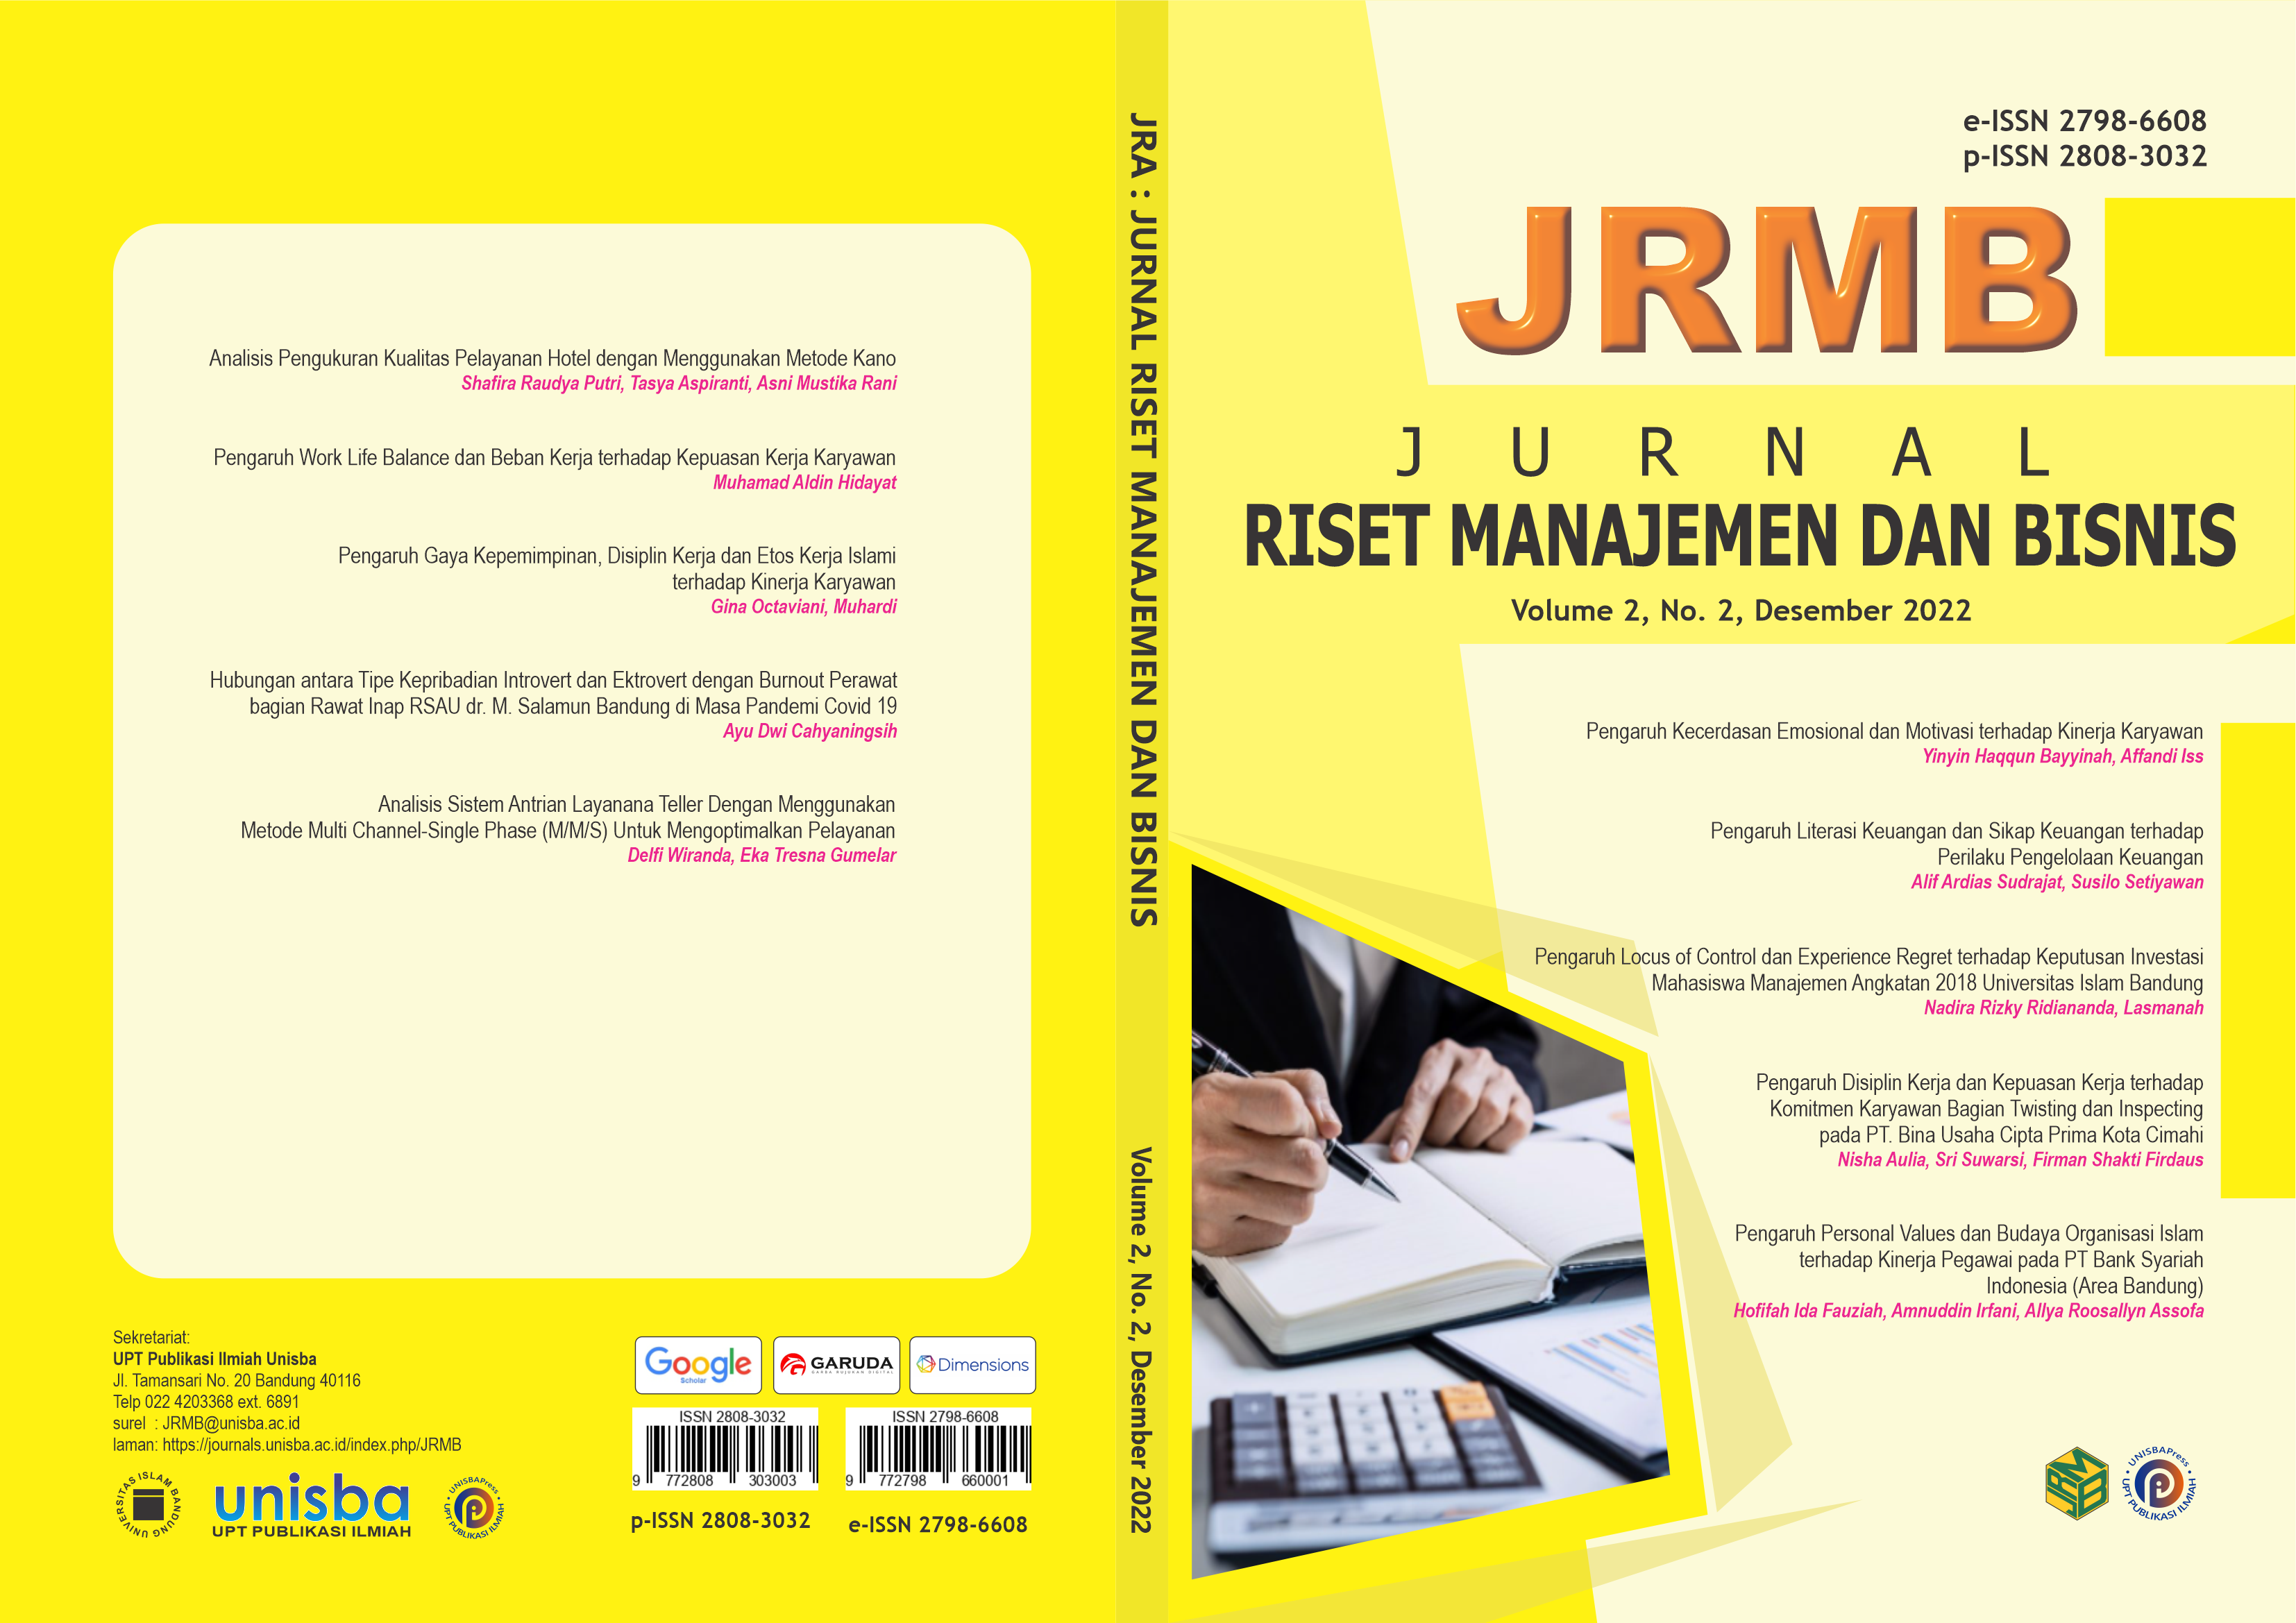 					View Volume 2, No. 2, Desember 2022 Jurnal Riset Manajemen dan Bisnis (JRMB)
				